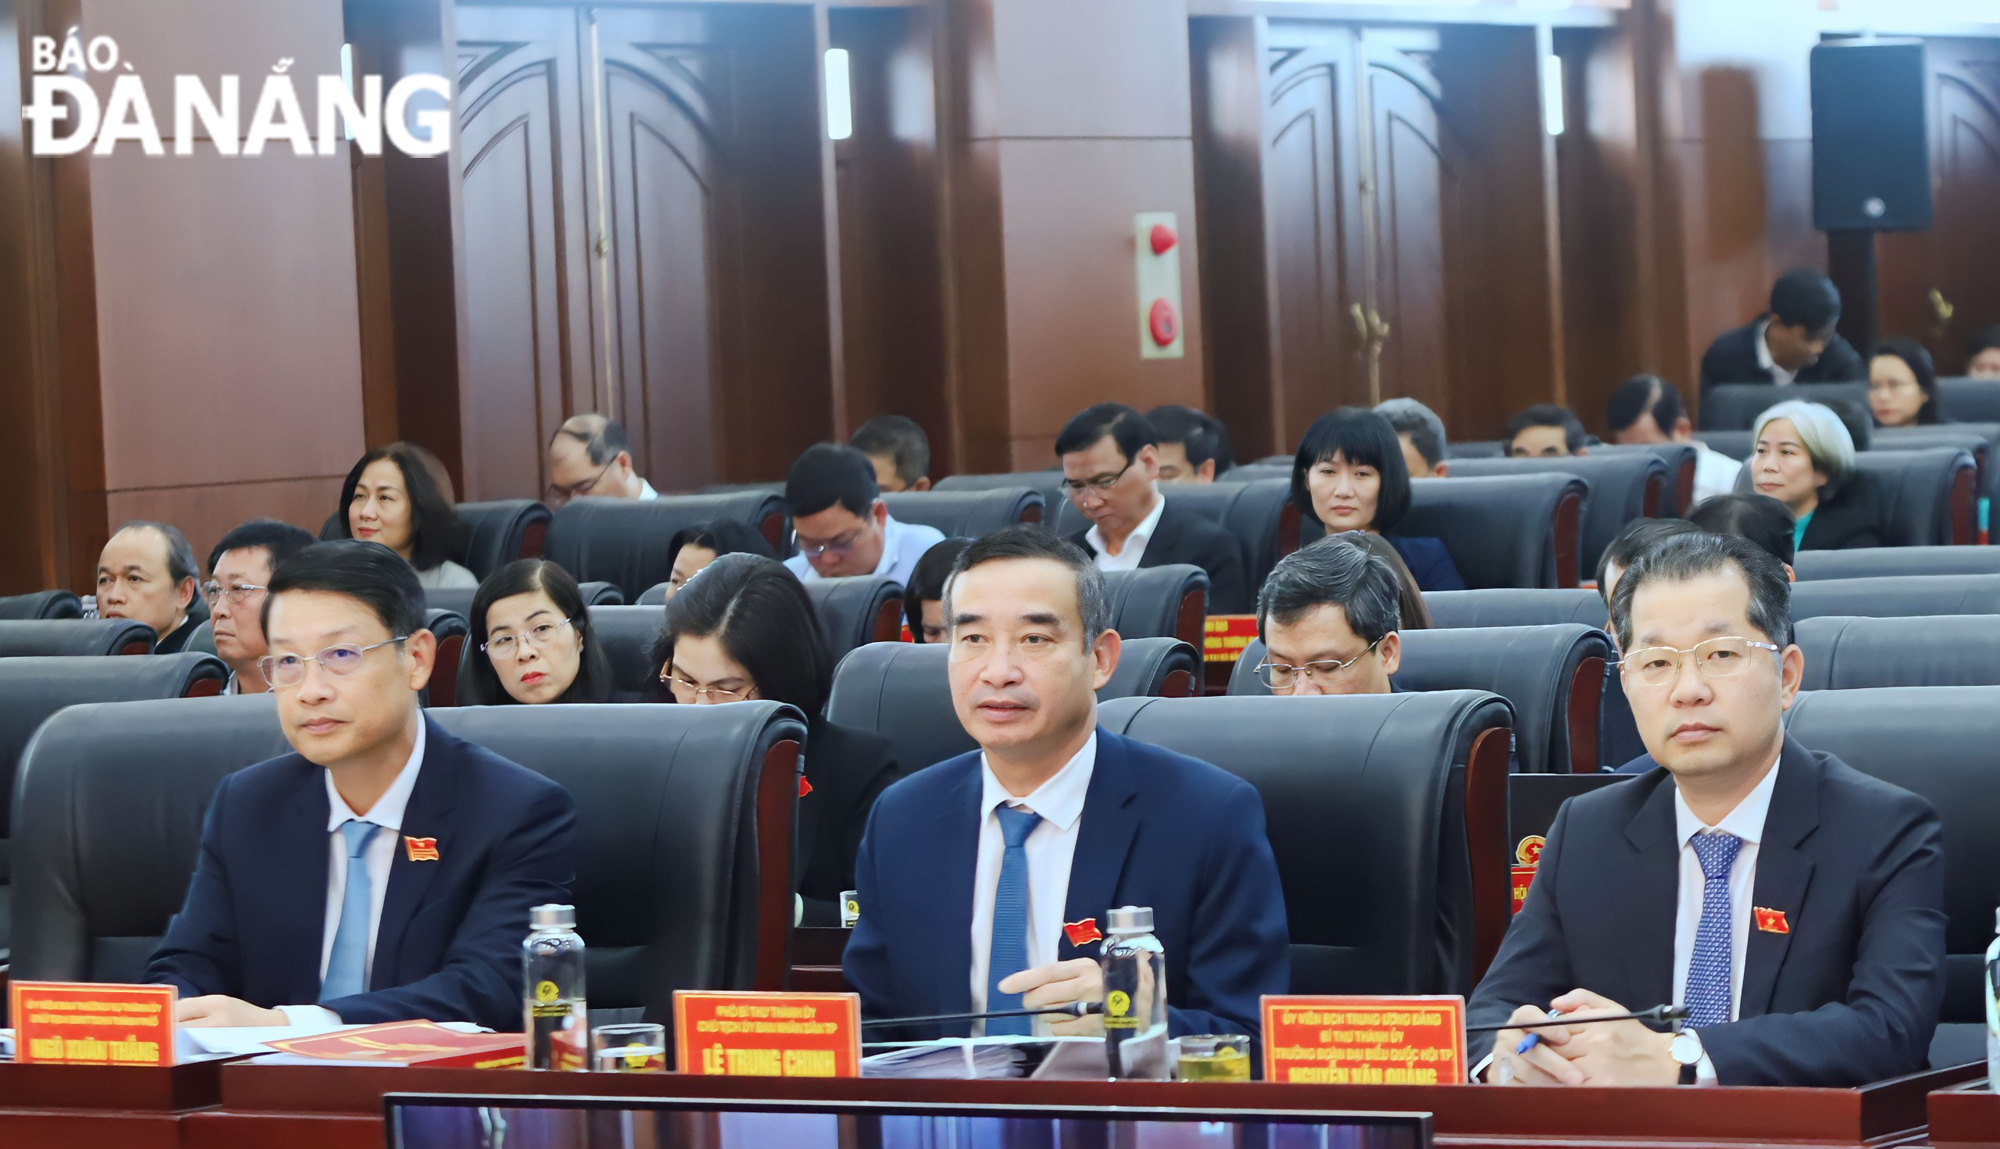 Bí thư Thành ủy Nguyễn Văn Quảng (bên phải) cùng các đại biểu HĐND thành phố dự kỳ họp. Ảnh: NGỌC PHÚ